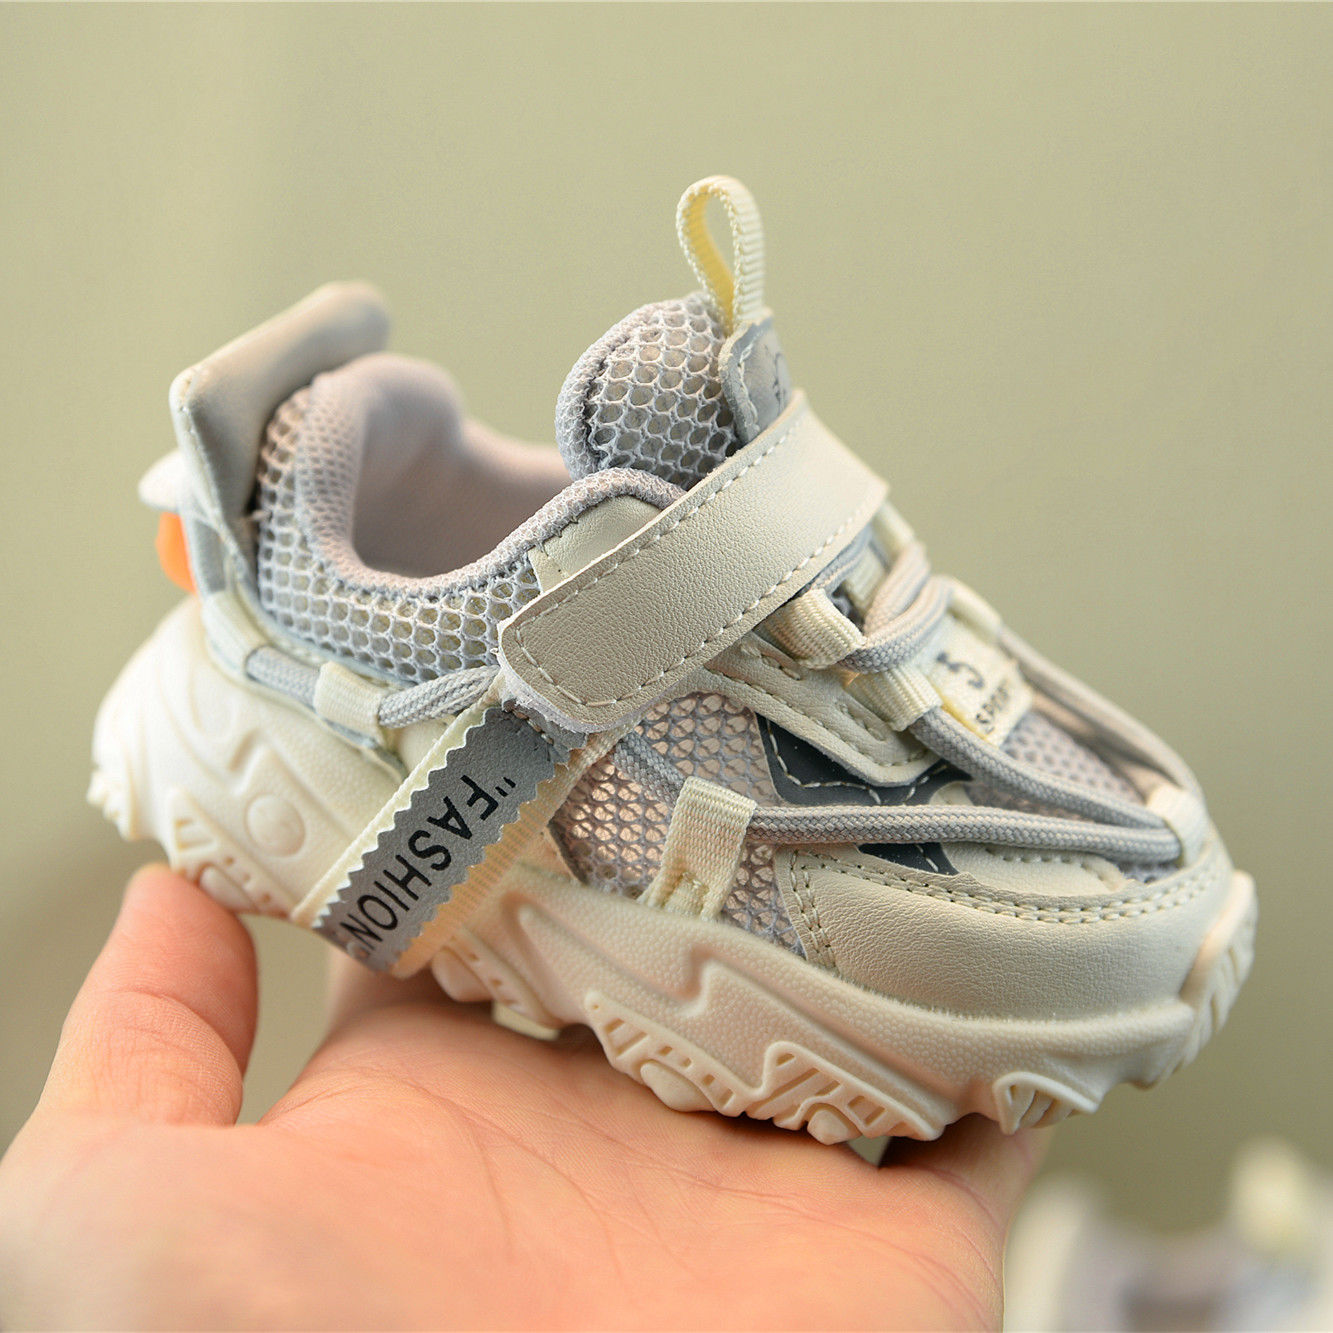 夏季宝宝鞋子软底运动网鞋男女童1一3岁休闲婴儿学步鞋小童防滑潮